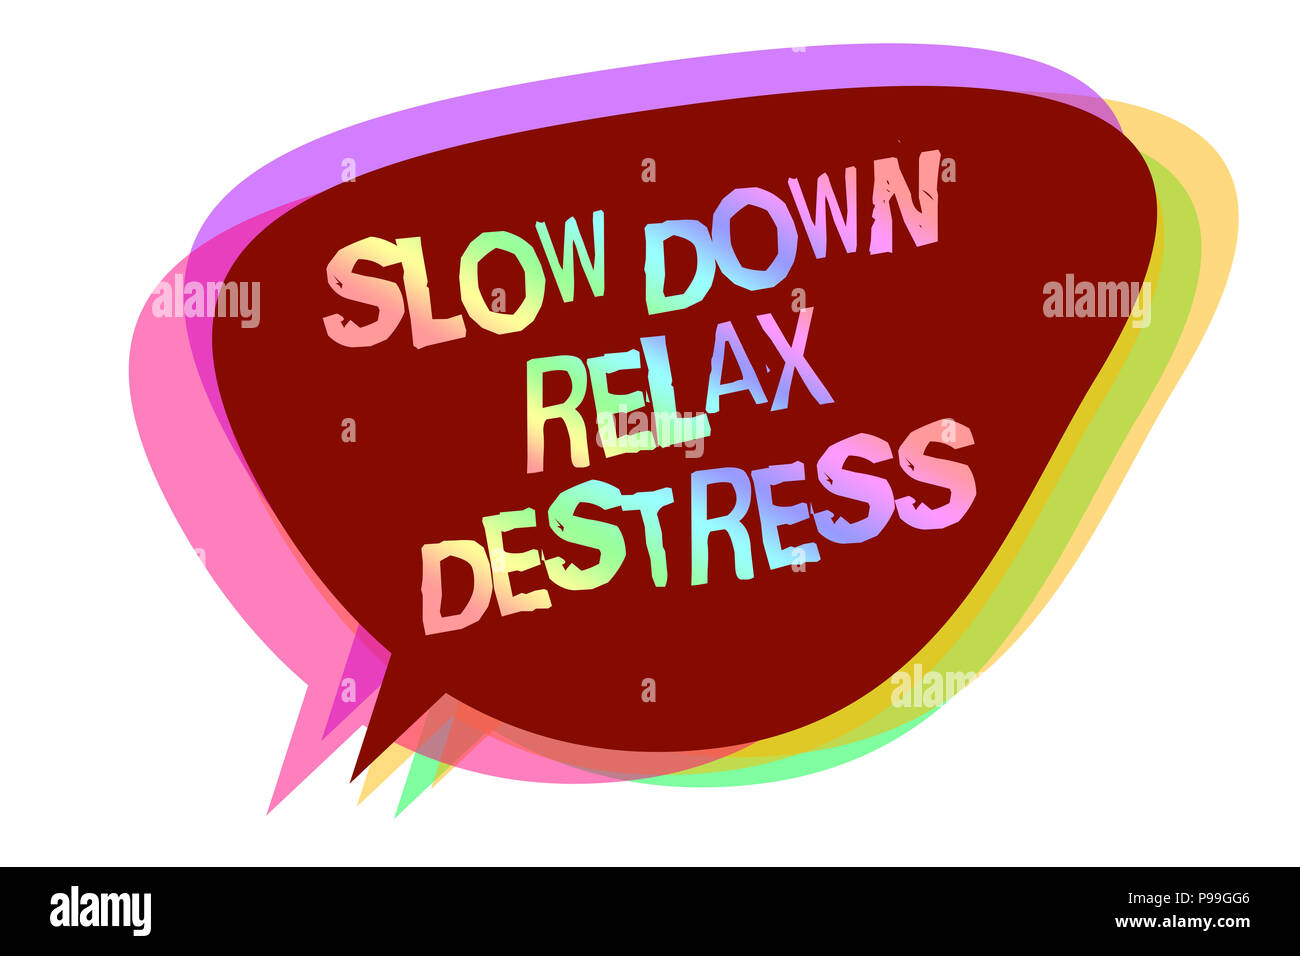 Signe texte montrant Ralentir vous détendre Destress. Photo conceptuelle calming apportera bonheur et vous mettre dans la bonne humeur bulle idée message rappel shad Banque D'Images